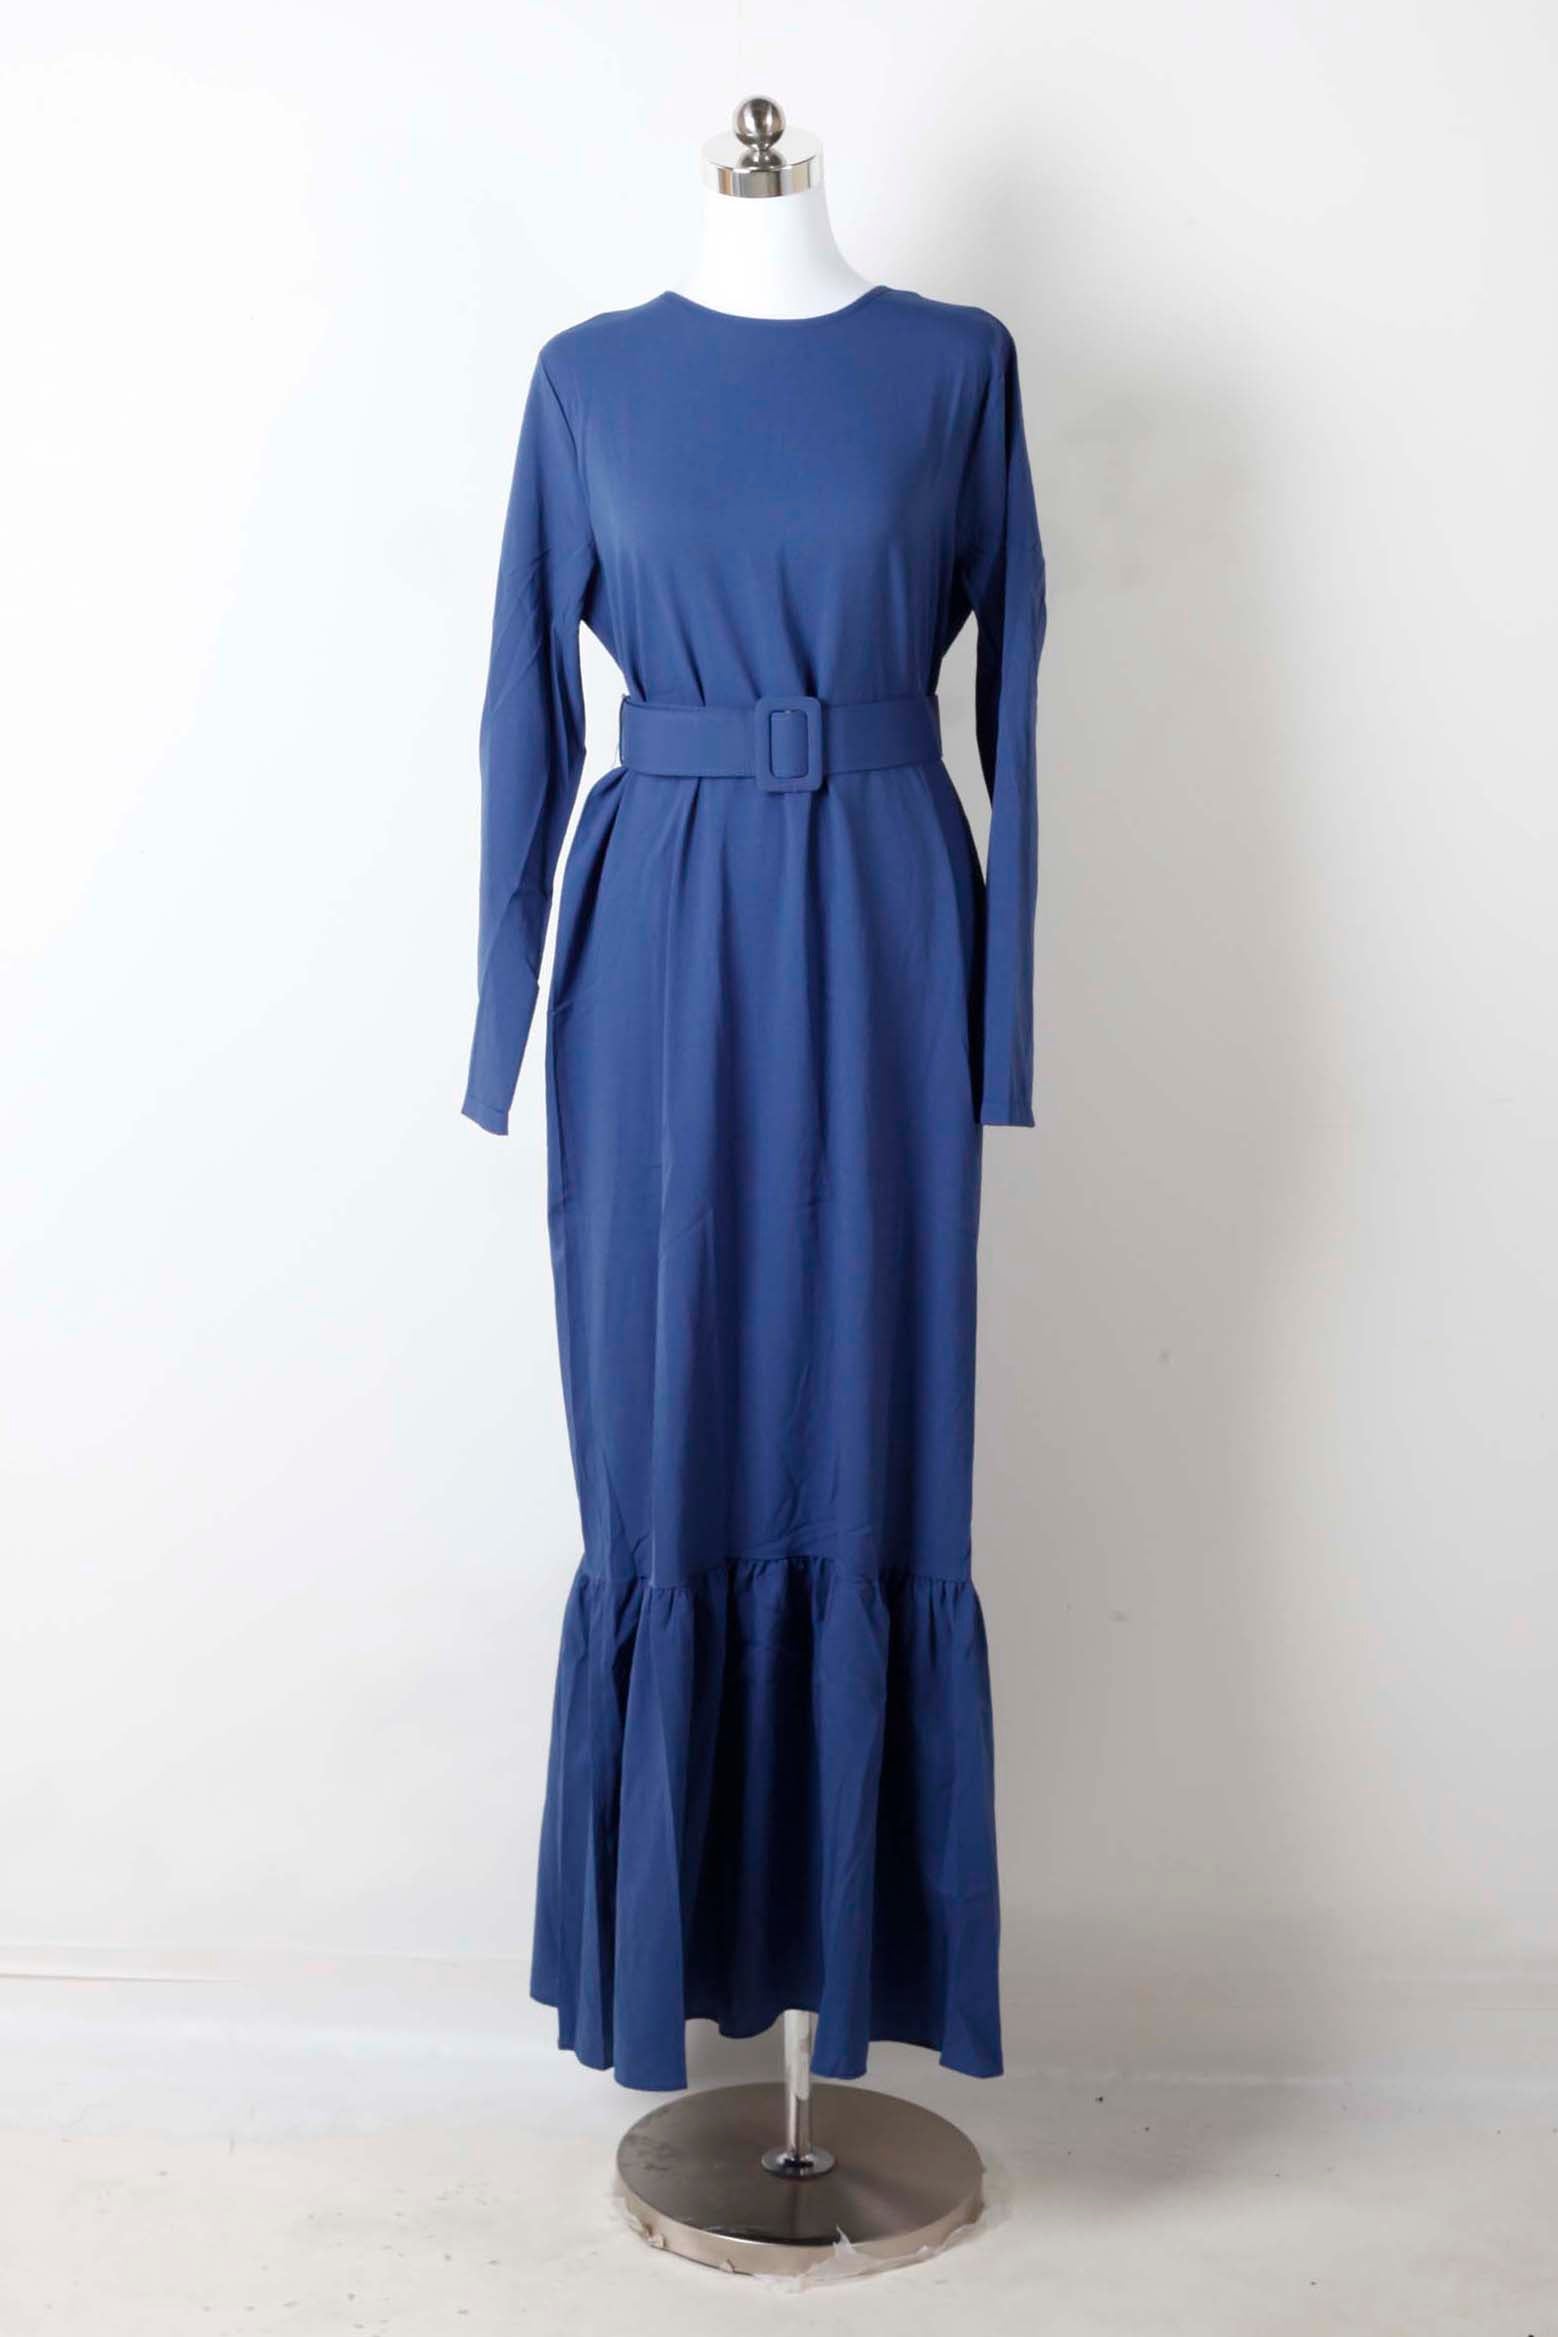 Blue Modest Dress